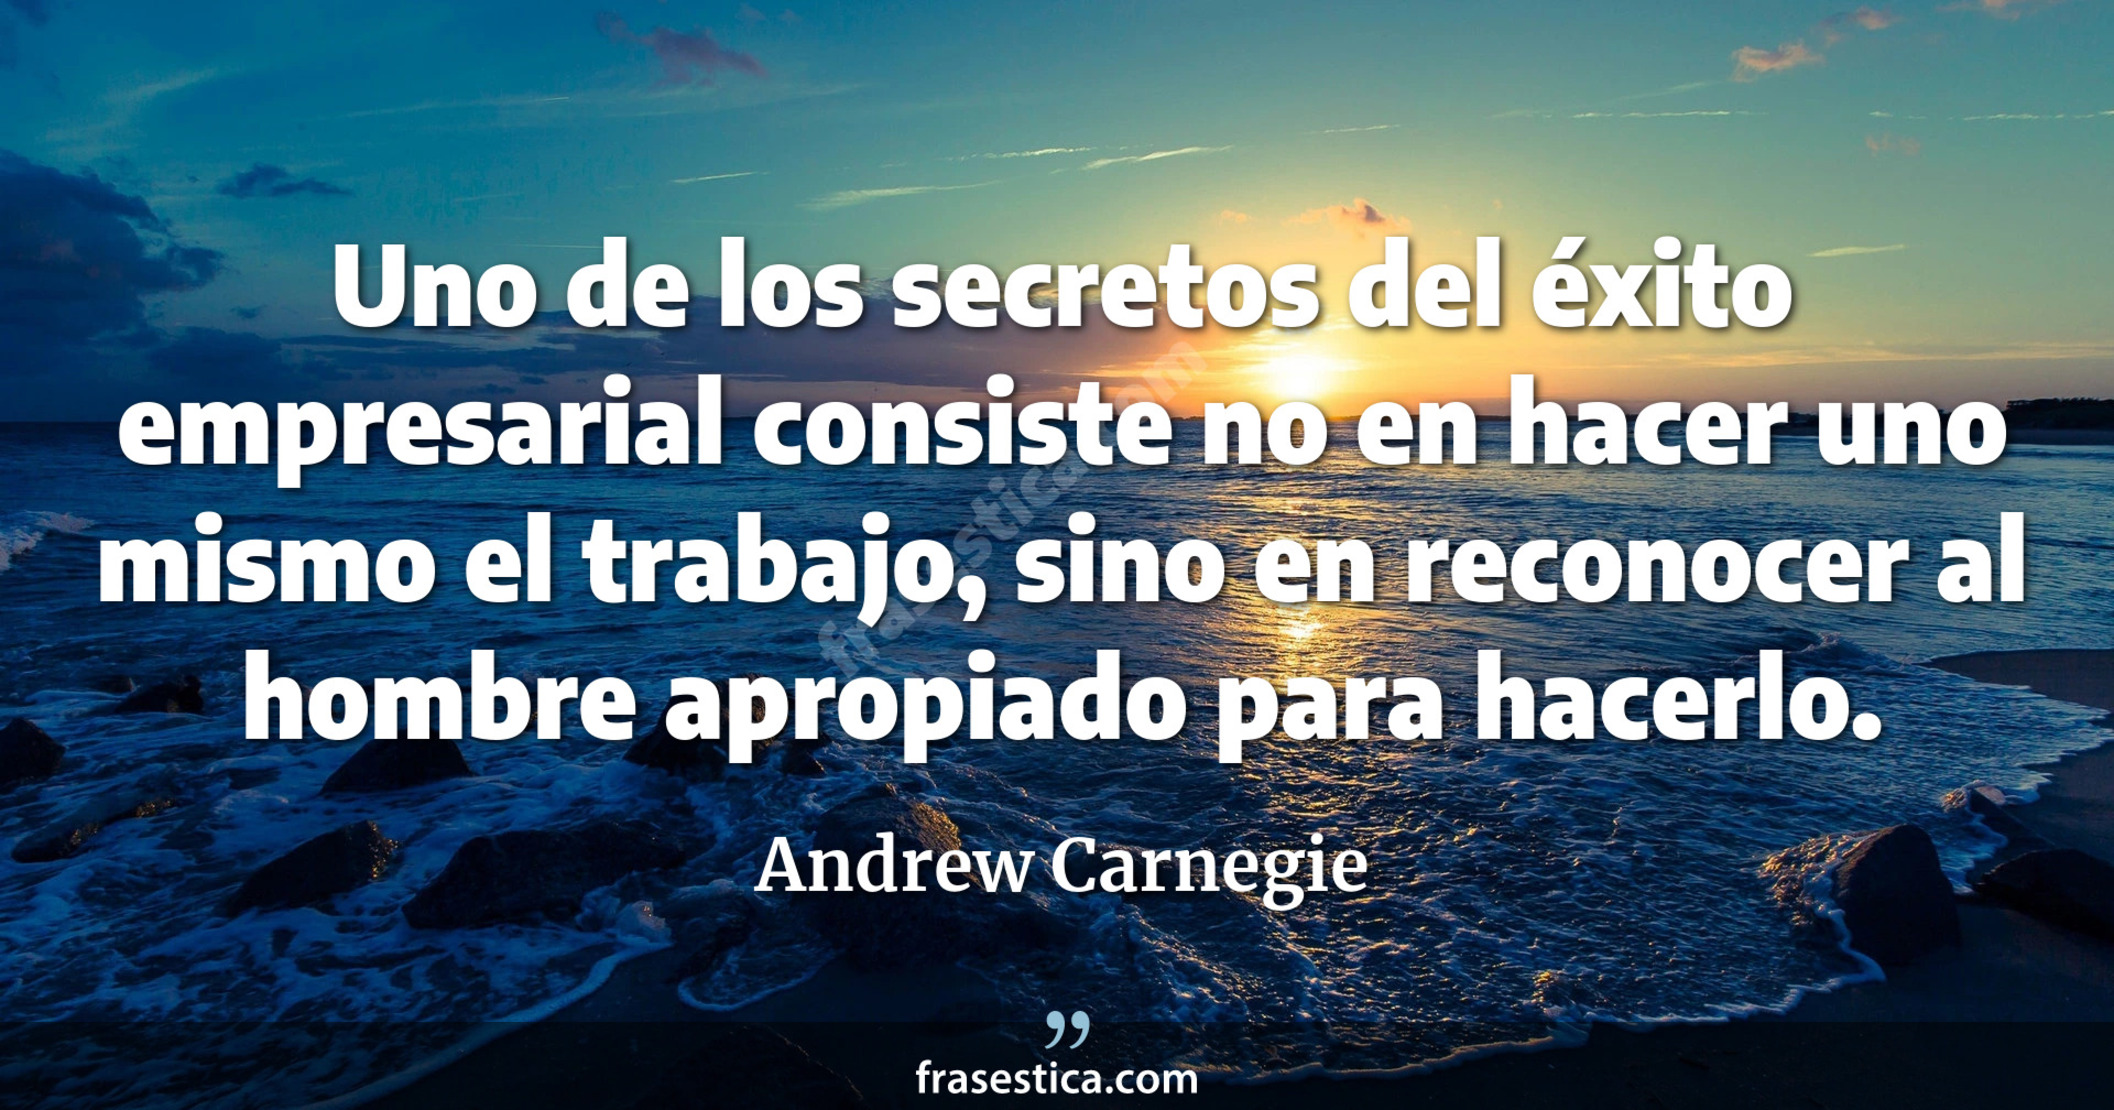 Uno de los secretos del éxito empresarial consiste no en hacer uno mismo el trabajo, sino en reconocer al hombre apropiado para hacerlo. - Andrew Carnegie